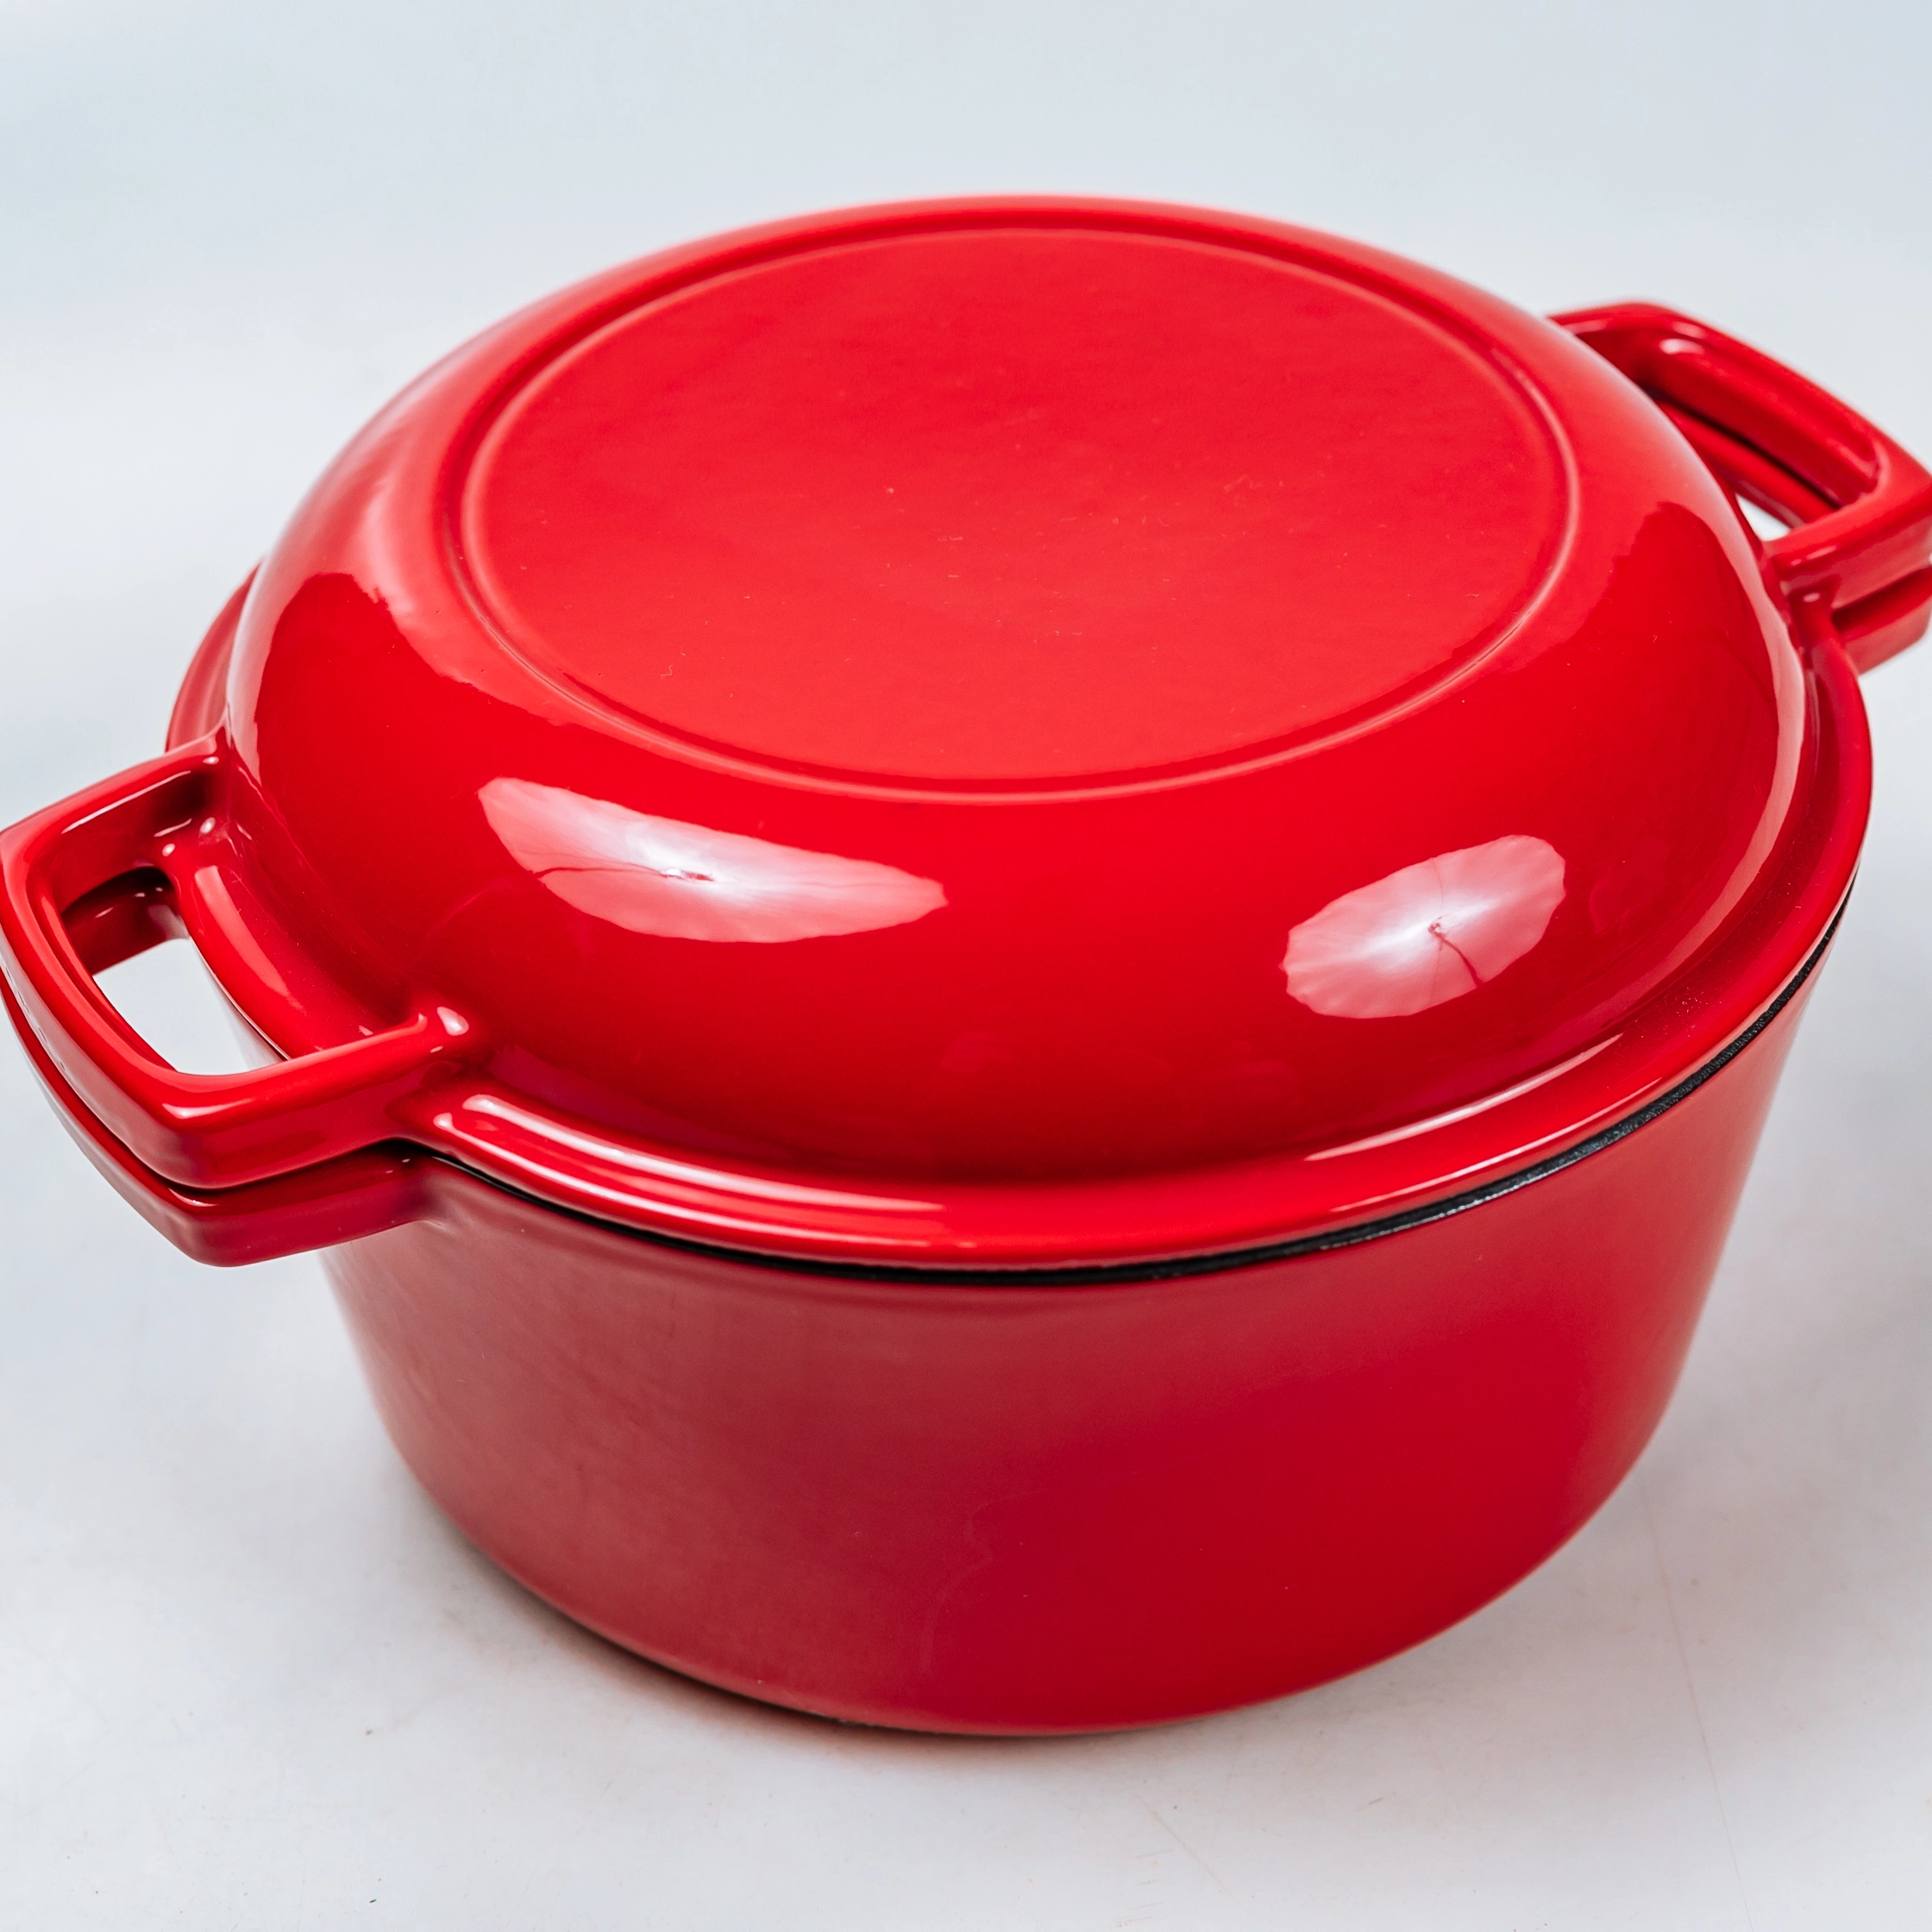 2 в 1 Красная круглая чугунная сковорода емкостью 5,1 кв.т и жаровня